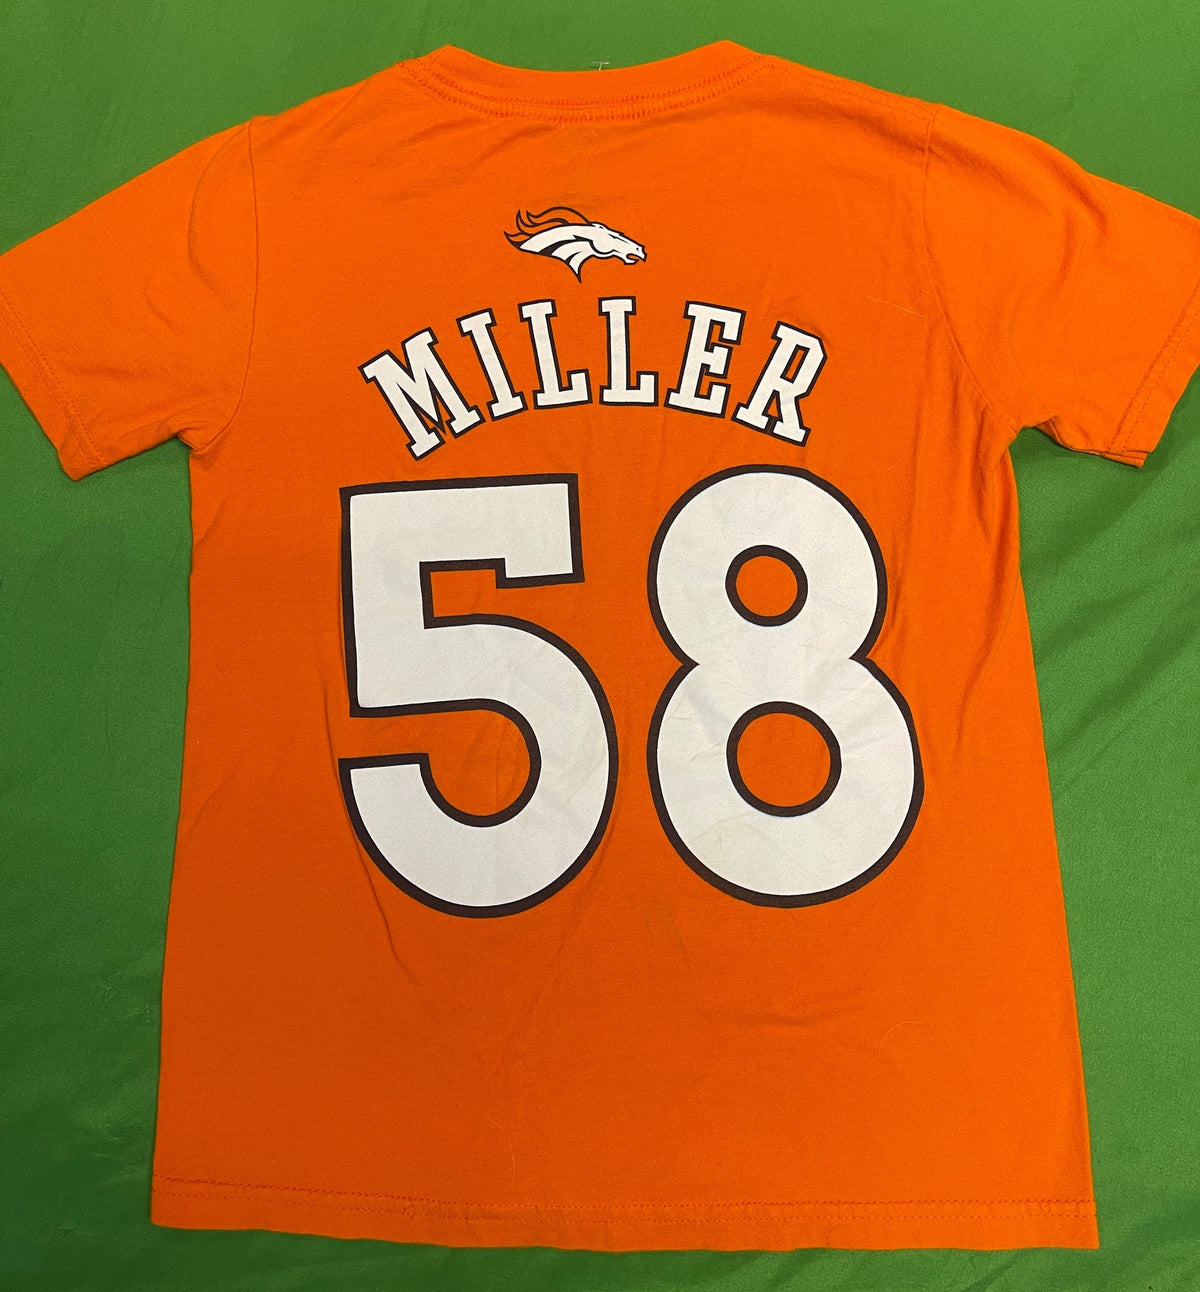 NFL Denver Broncos Von Miller #58 Orange T-Shirt Youth Small